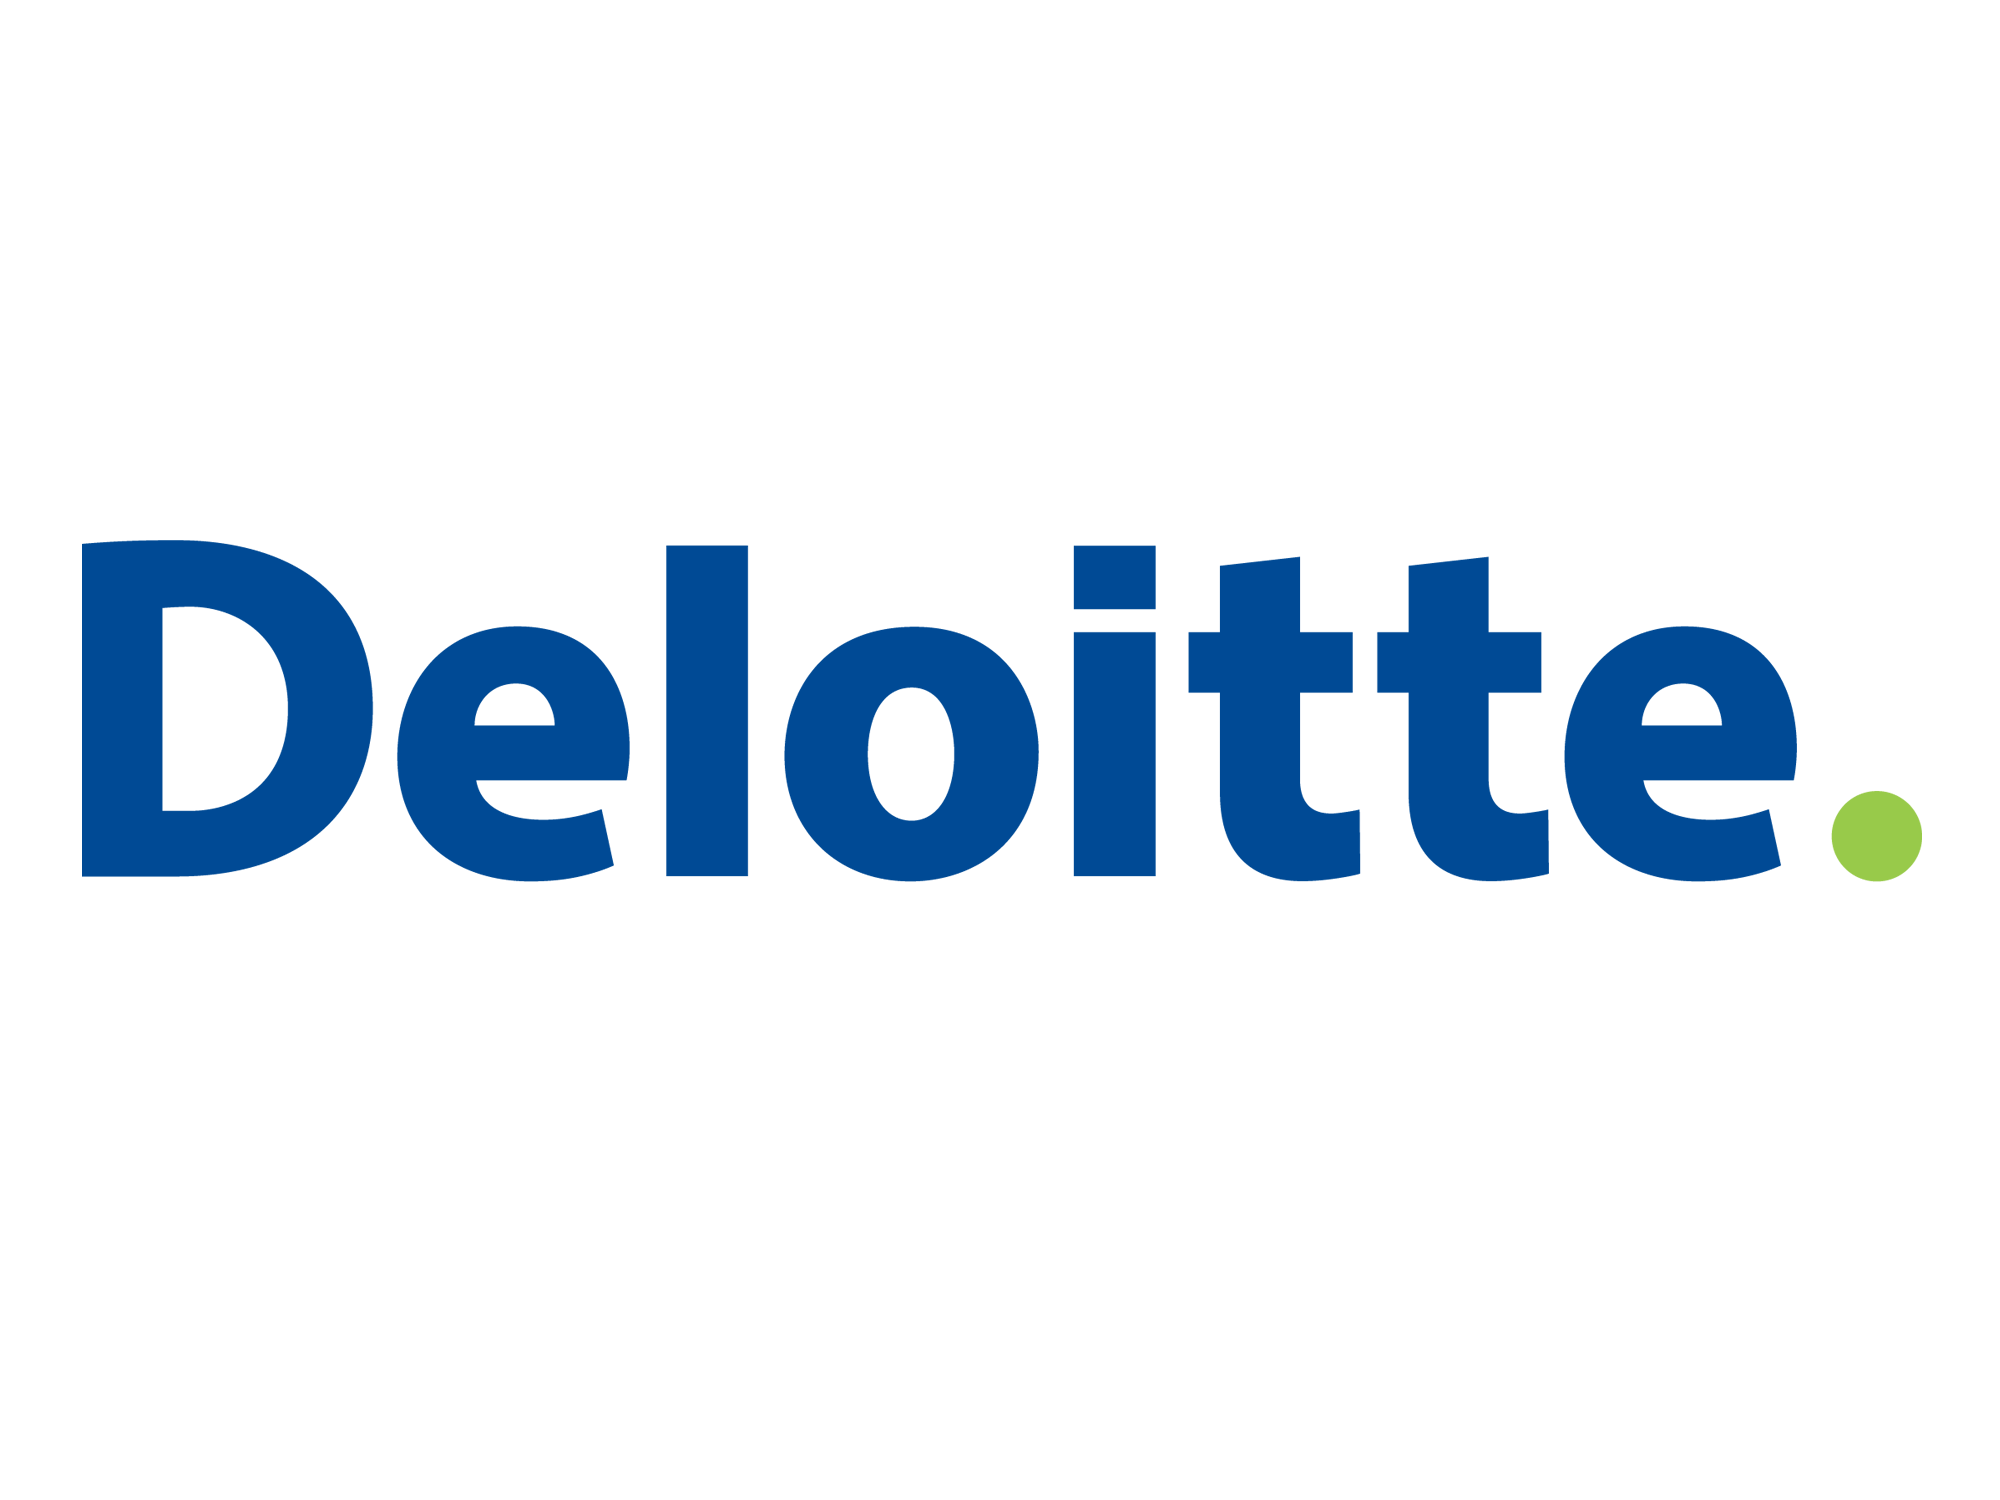 Deloitte_logo